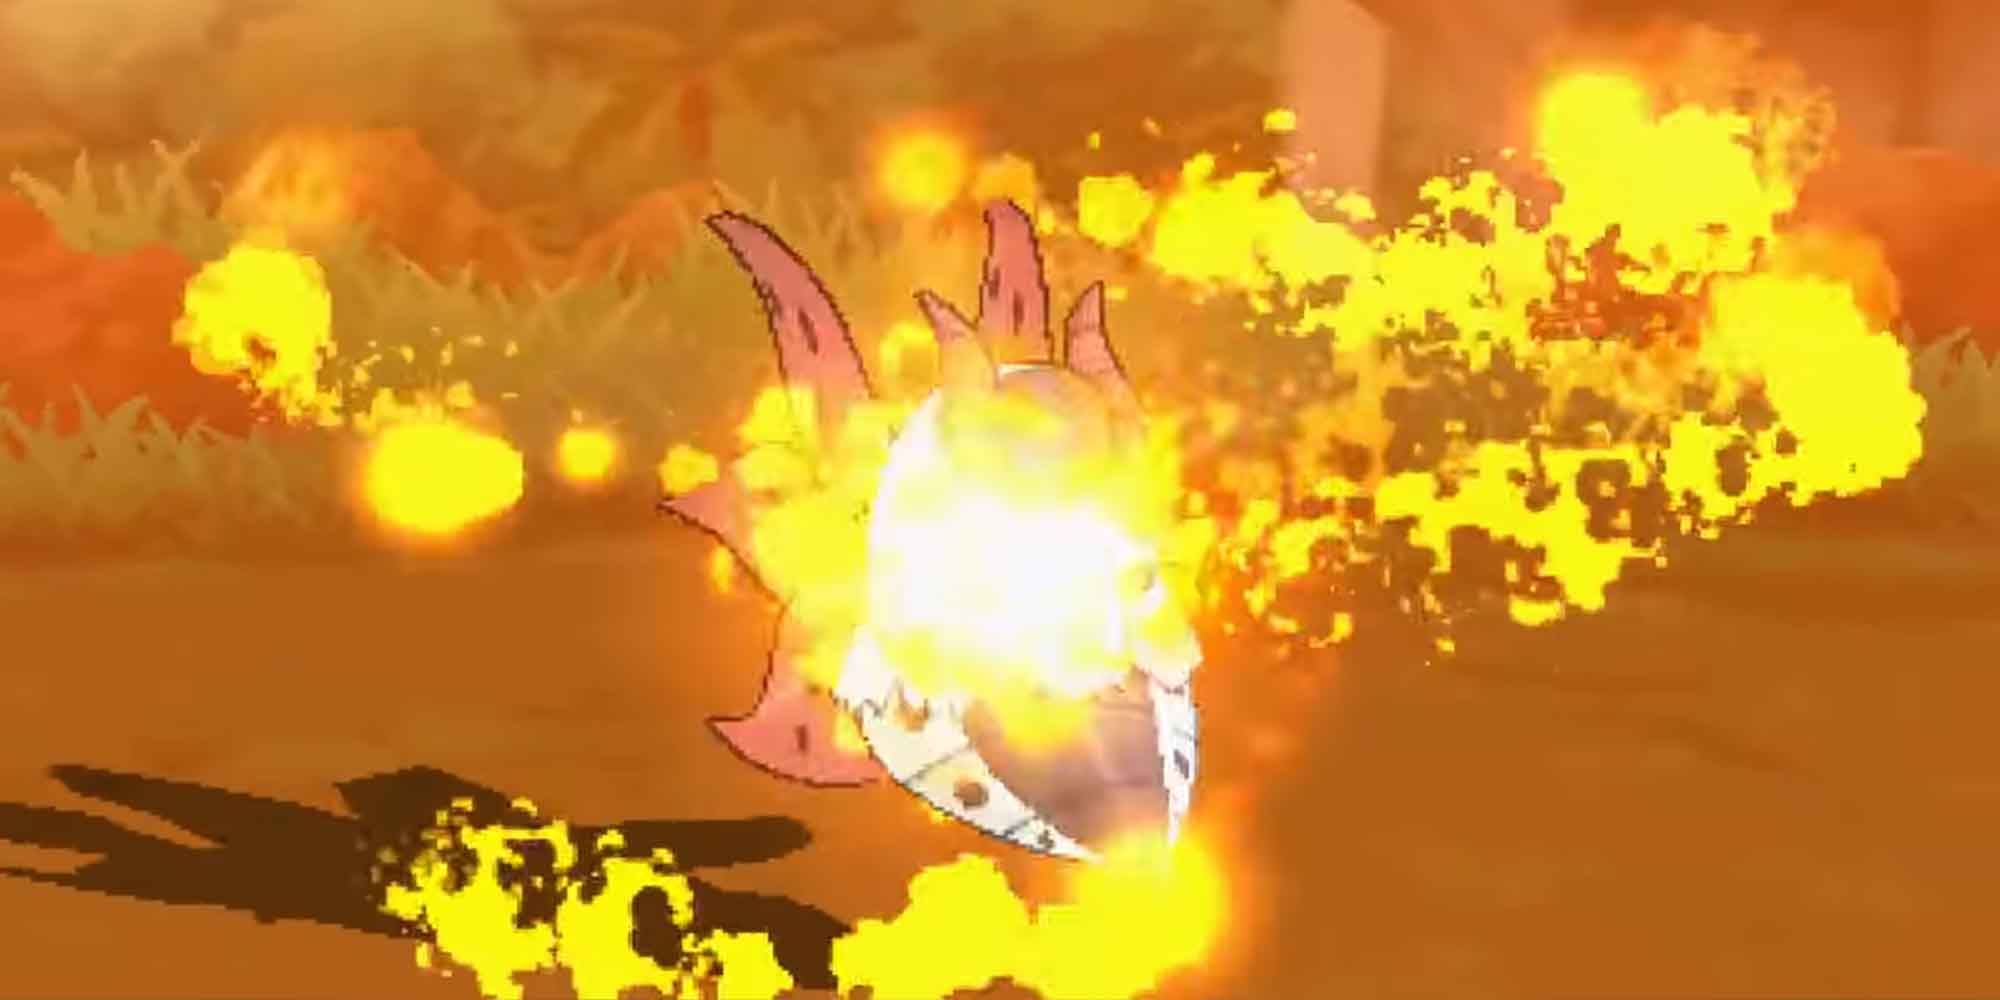 The Fiery Dance move in Pokemon